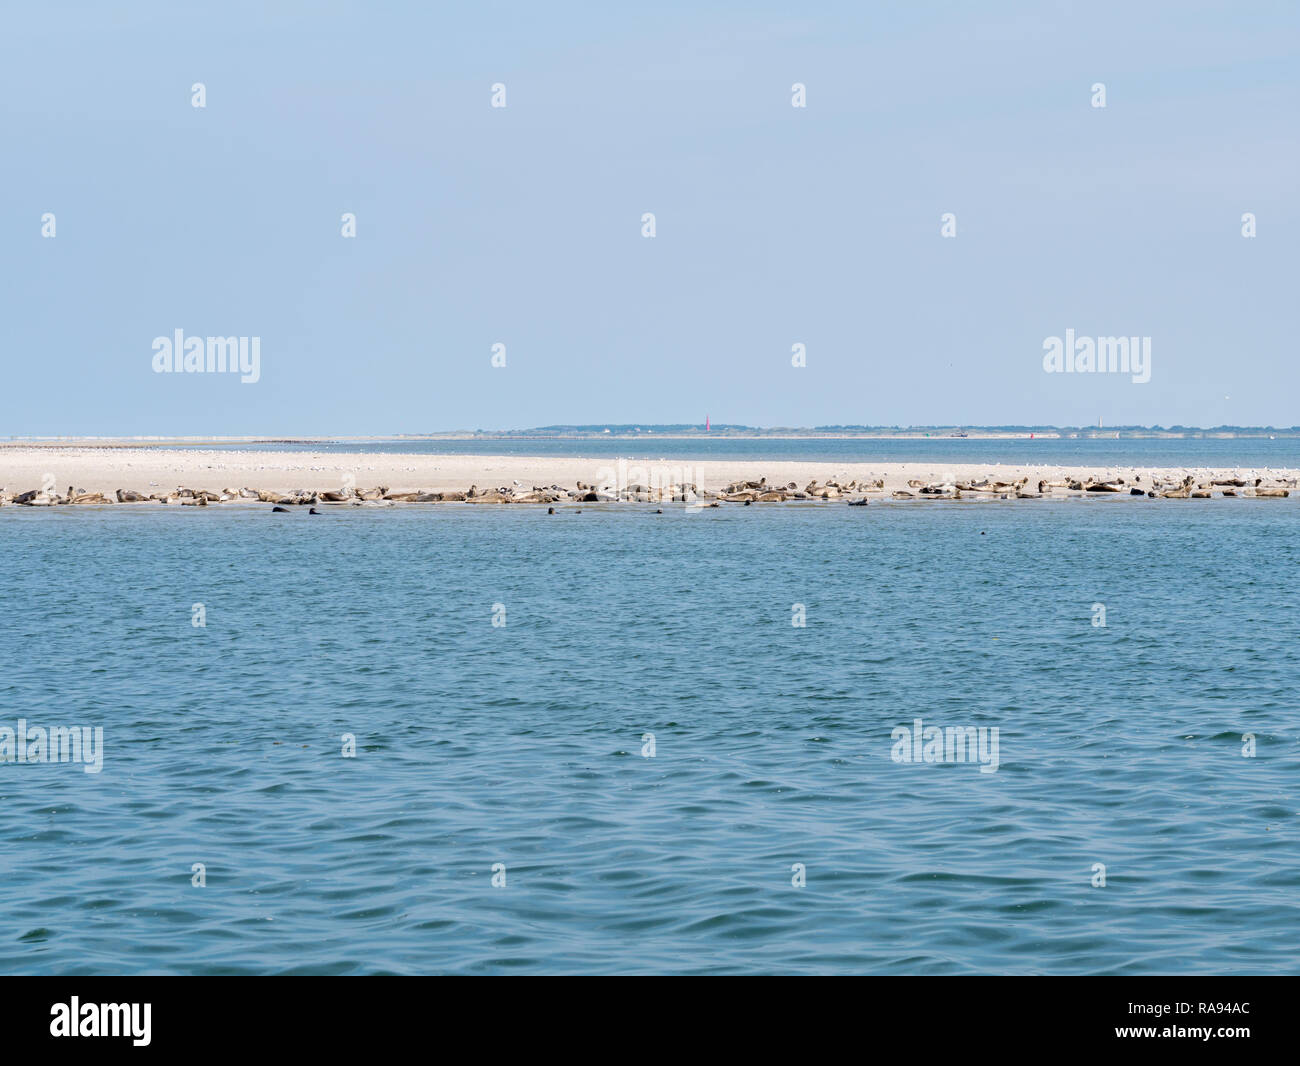 Phoques communs et gris se reposant sur le sable banque du Rif avec phare de l'île de Schiermonnikoog Frise occidentale en arrière-plan, mer des Wadden, Pays-Bas Banque D'Images